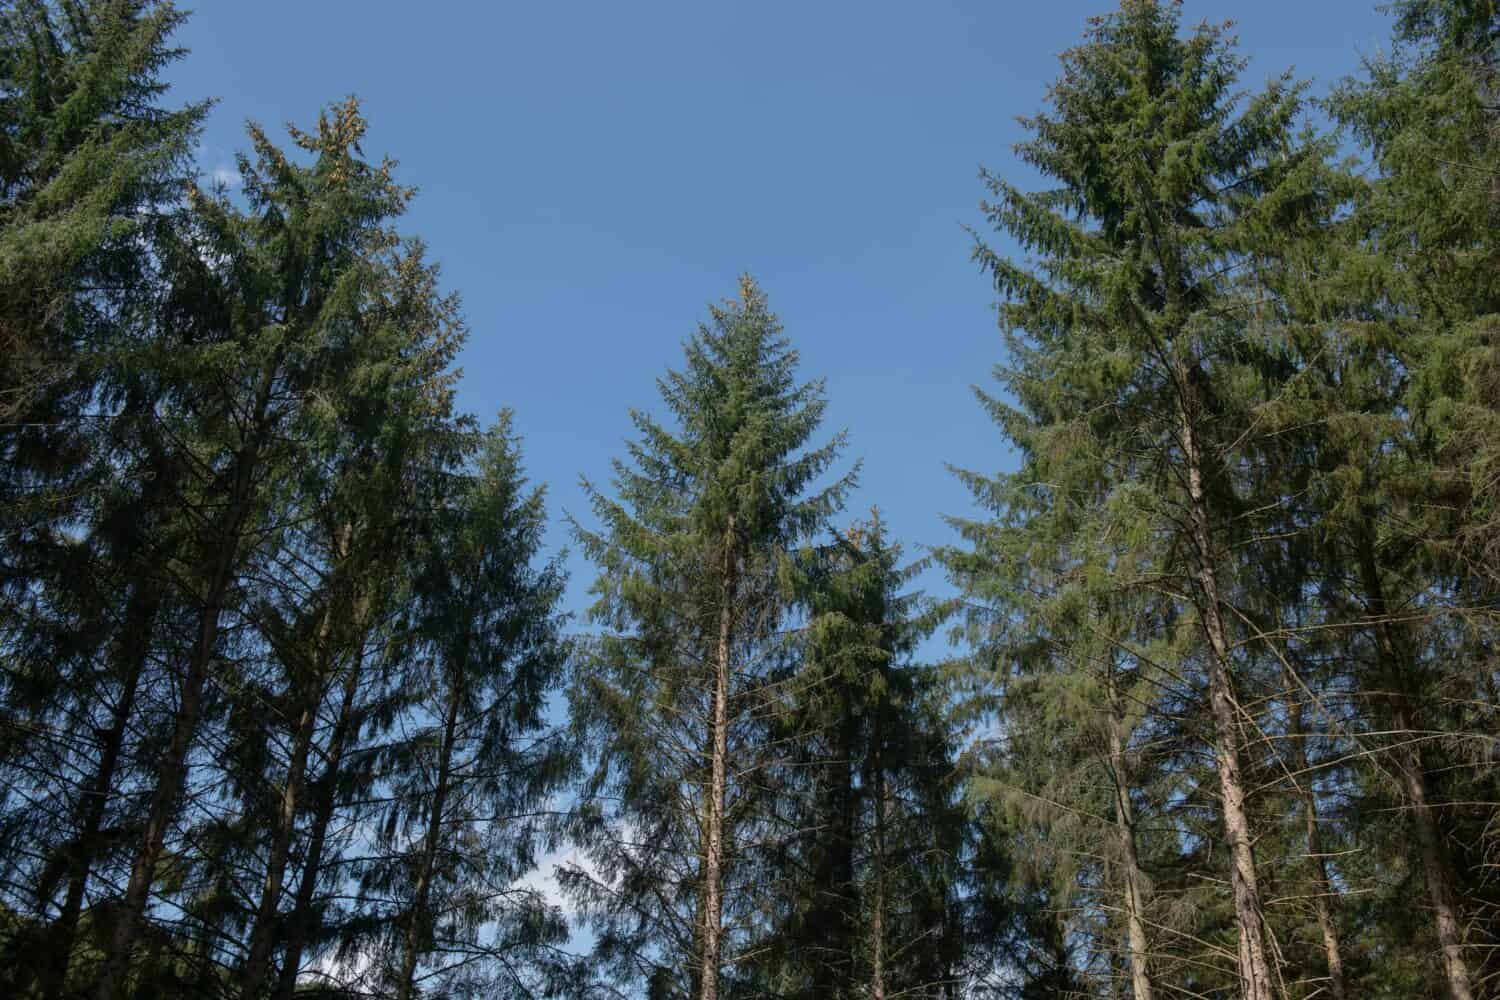 Fogliame estivo su alberi di abete rosso Sitka sempreverdi (Picea sitchensis) che crescono in una foresta boschiva con uno sfondo di cielo azzurro luminoso nel Devon rurale, Inghilterra, Regno Unito